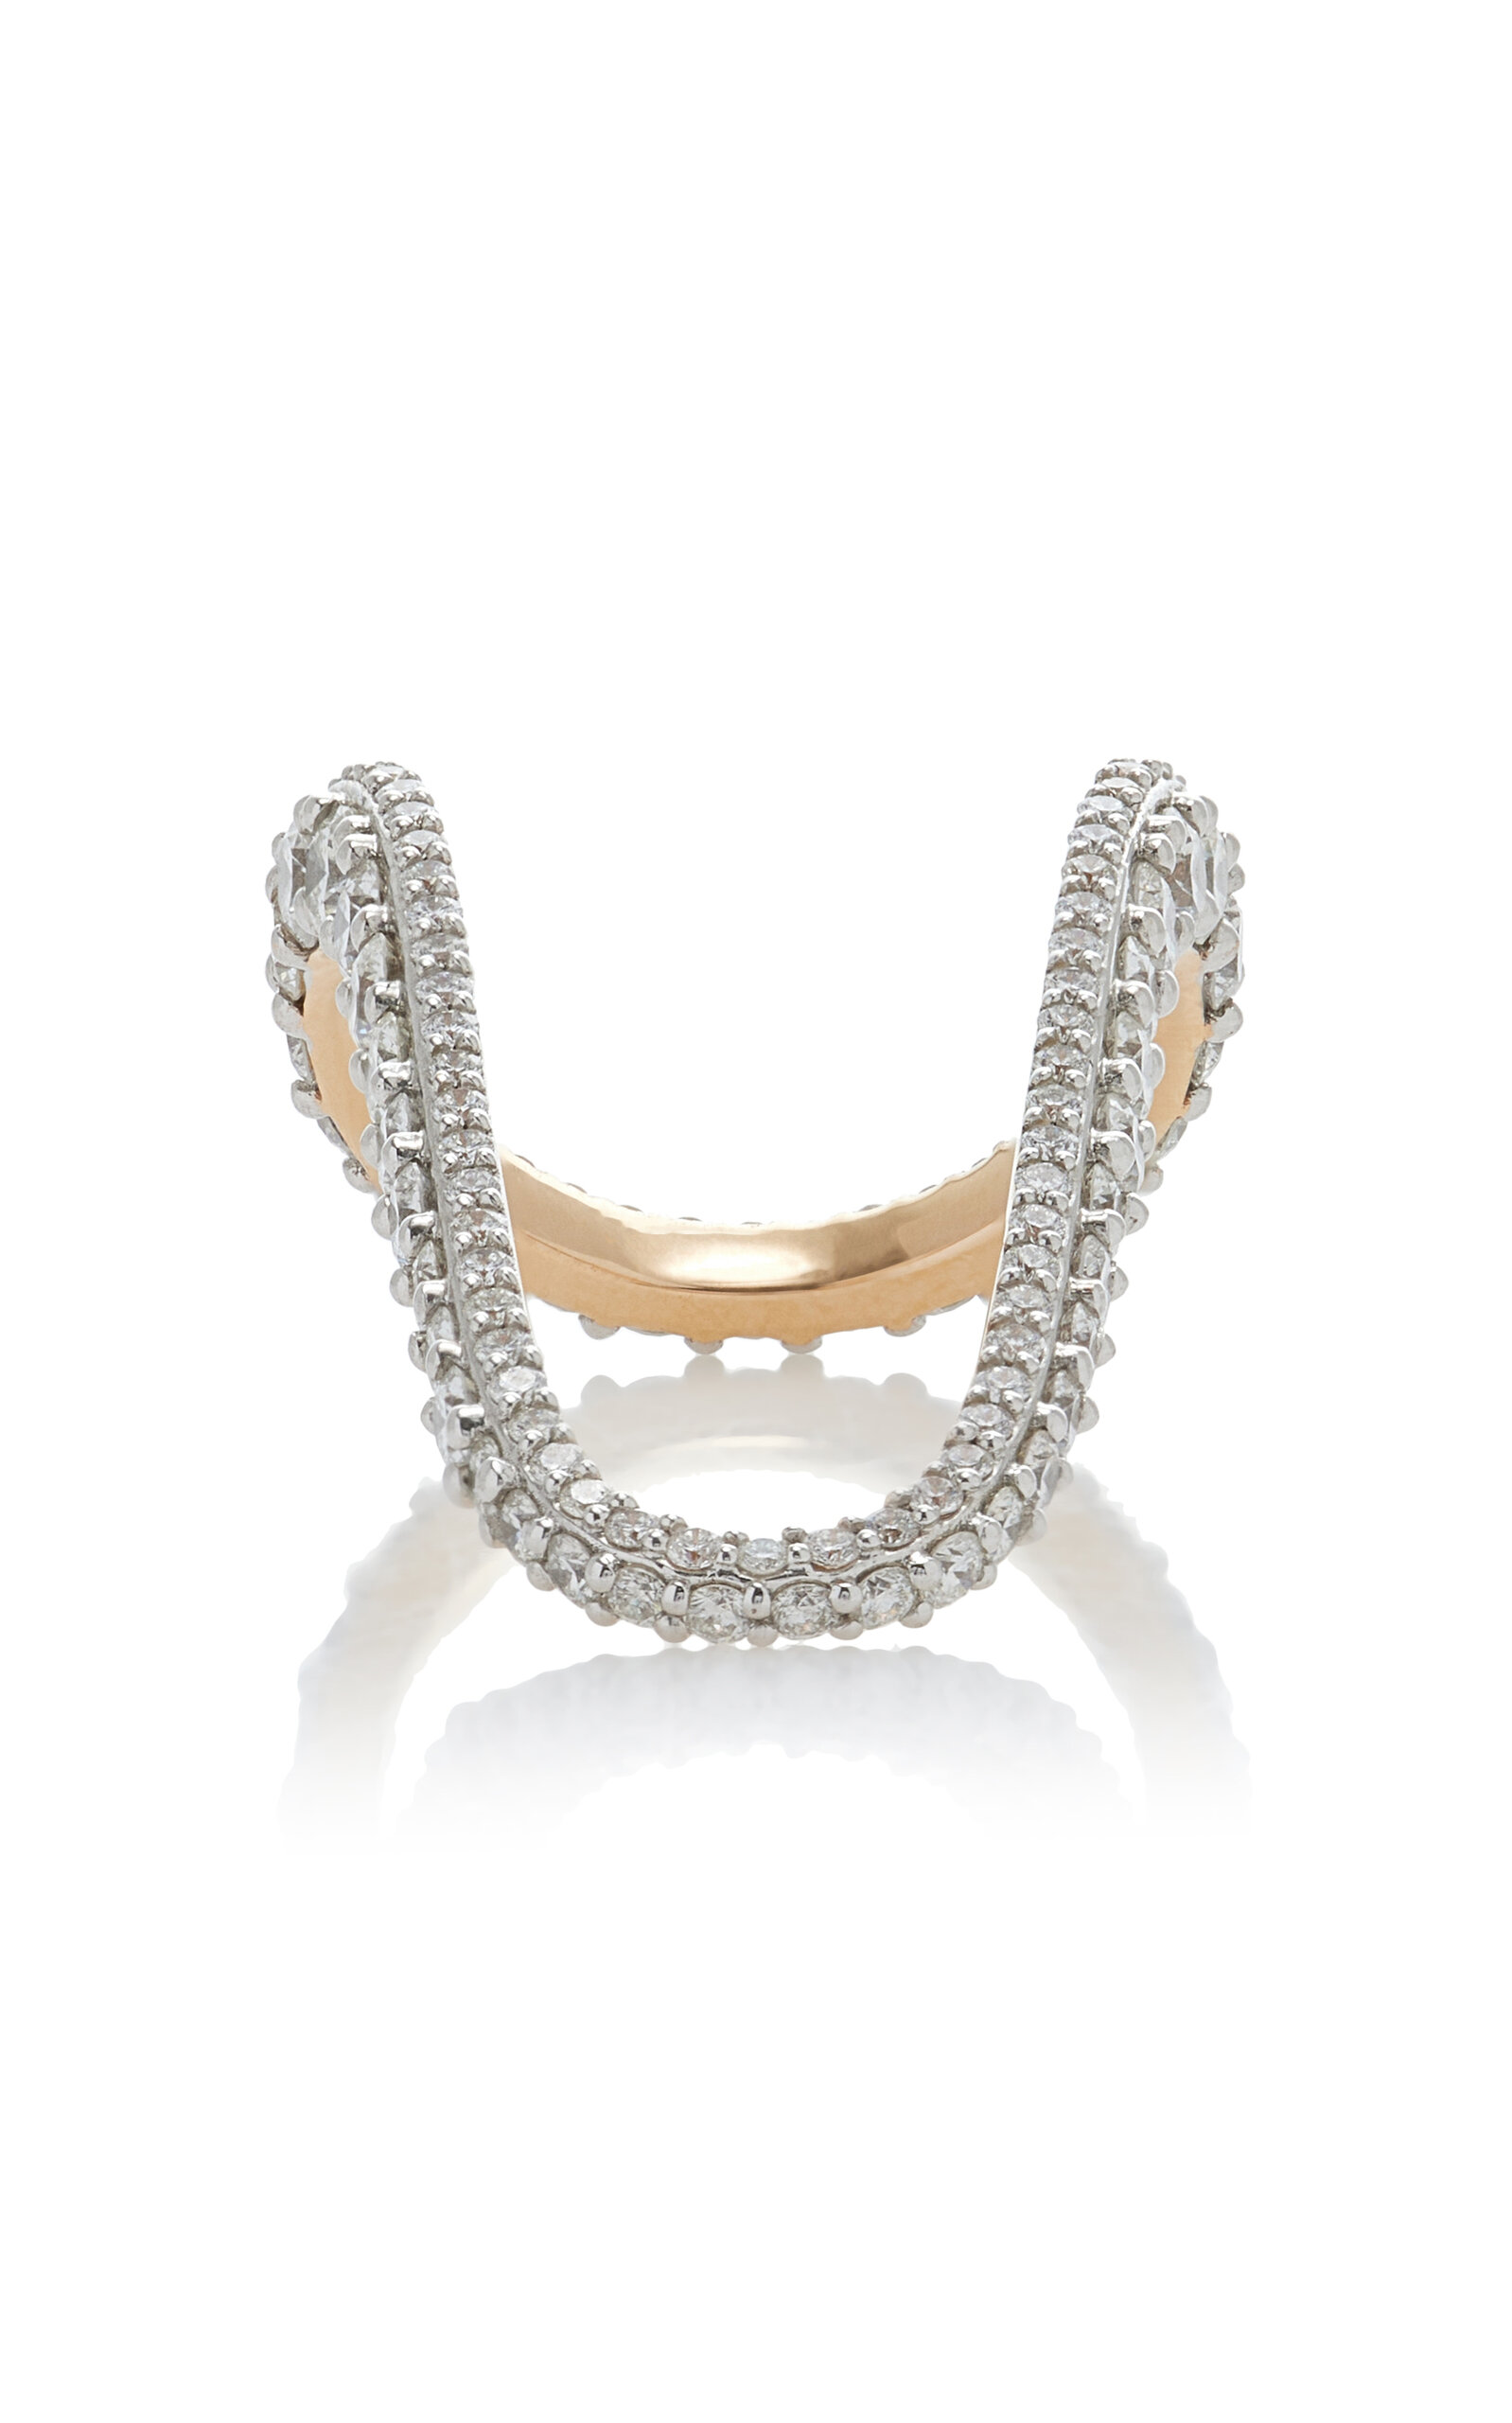 Grand Radiant 18k Rose Gold Diamond Ring